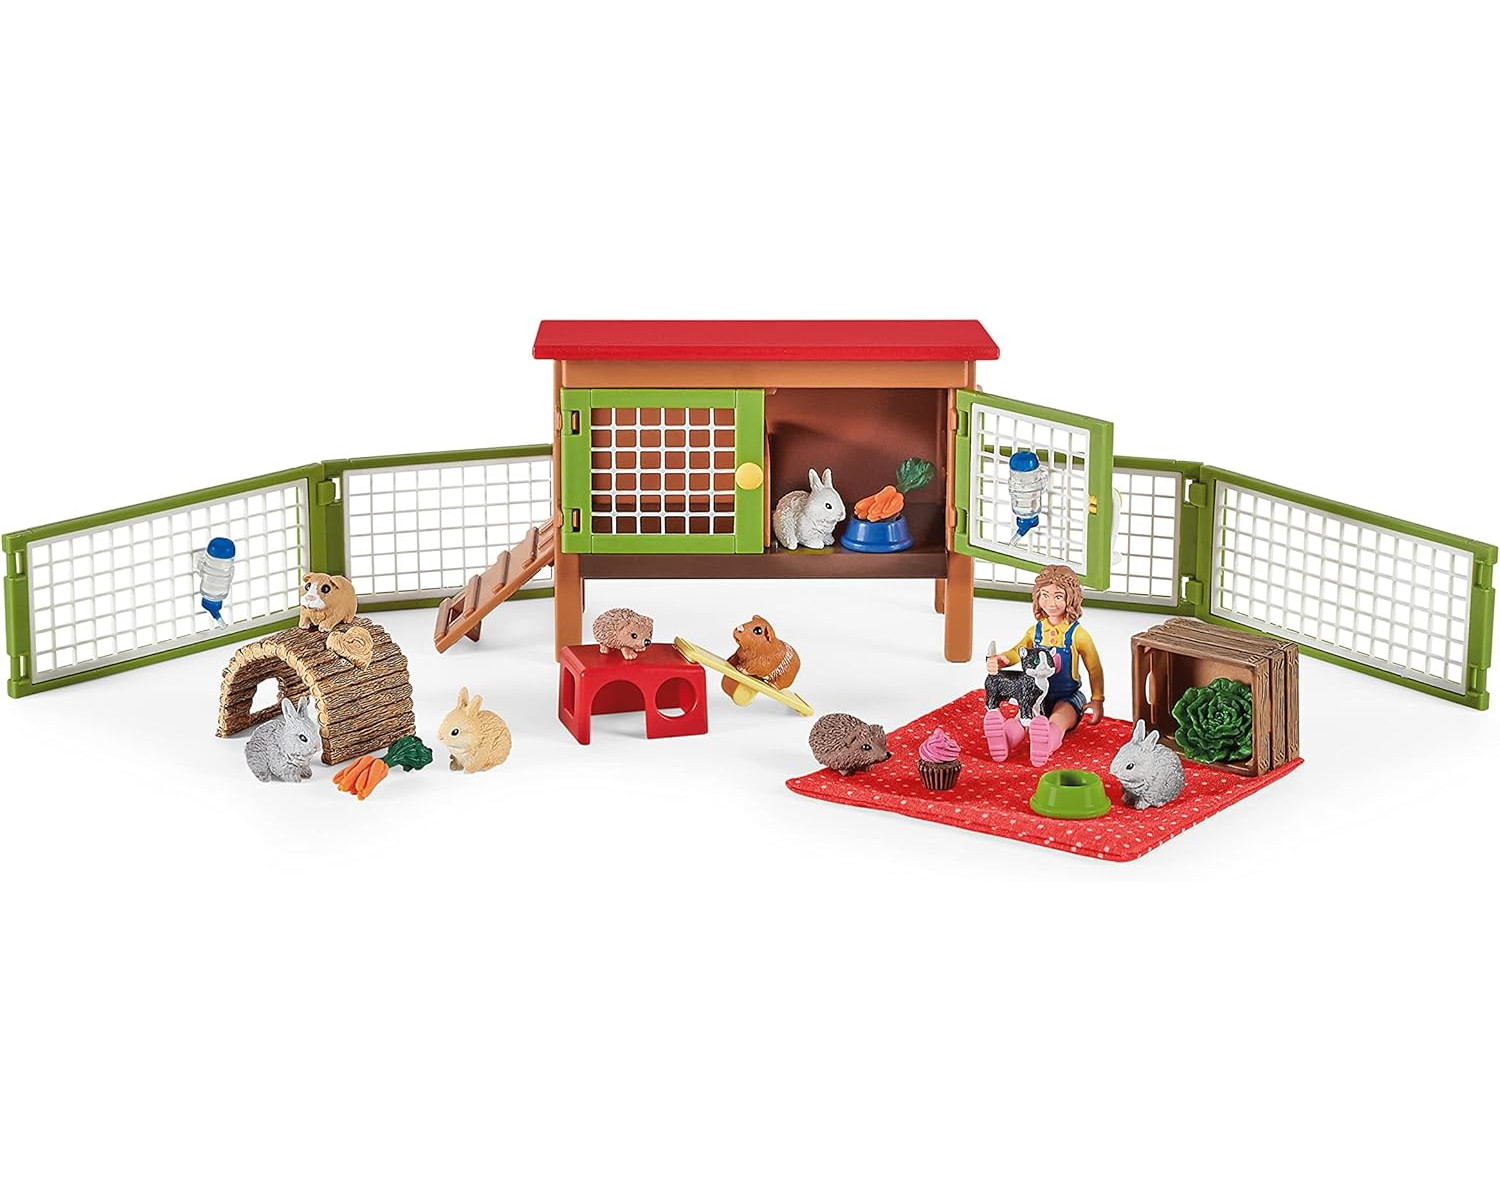 SCHLEICH Tierfiguren kleinen mit Picknick Haustieren - World Farm Spielfiguren